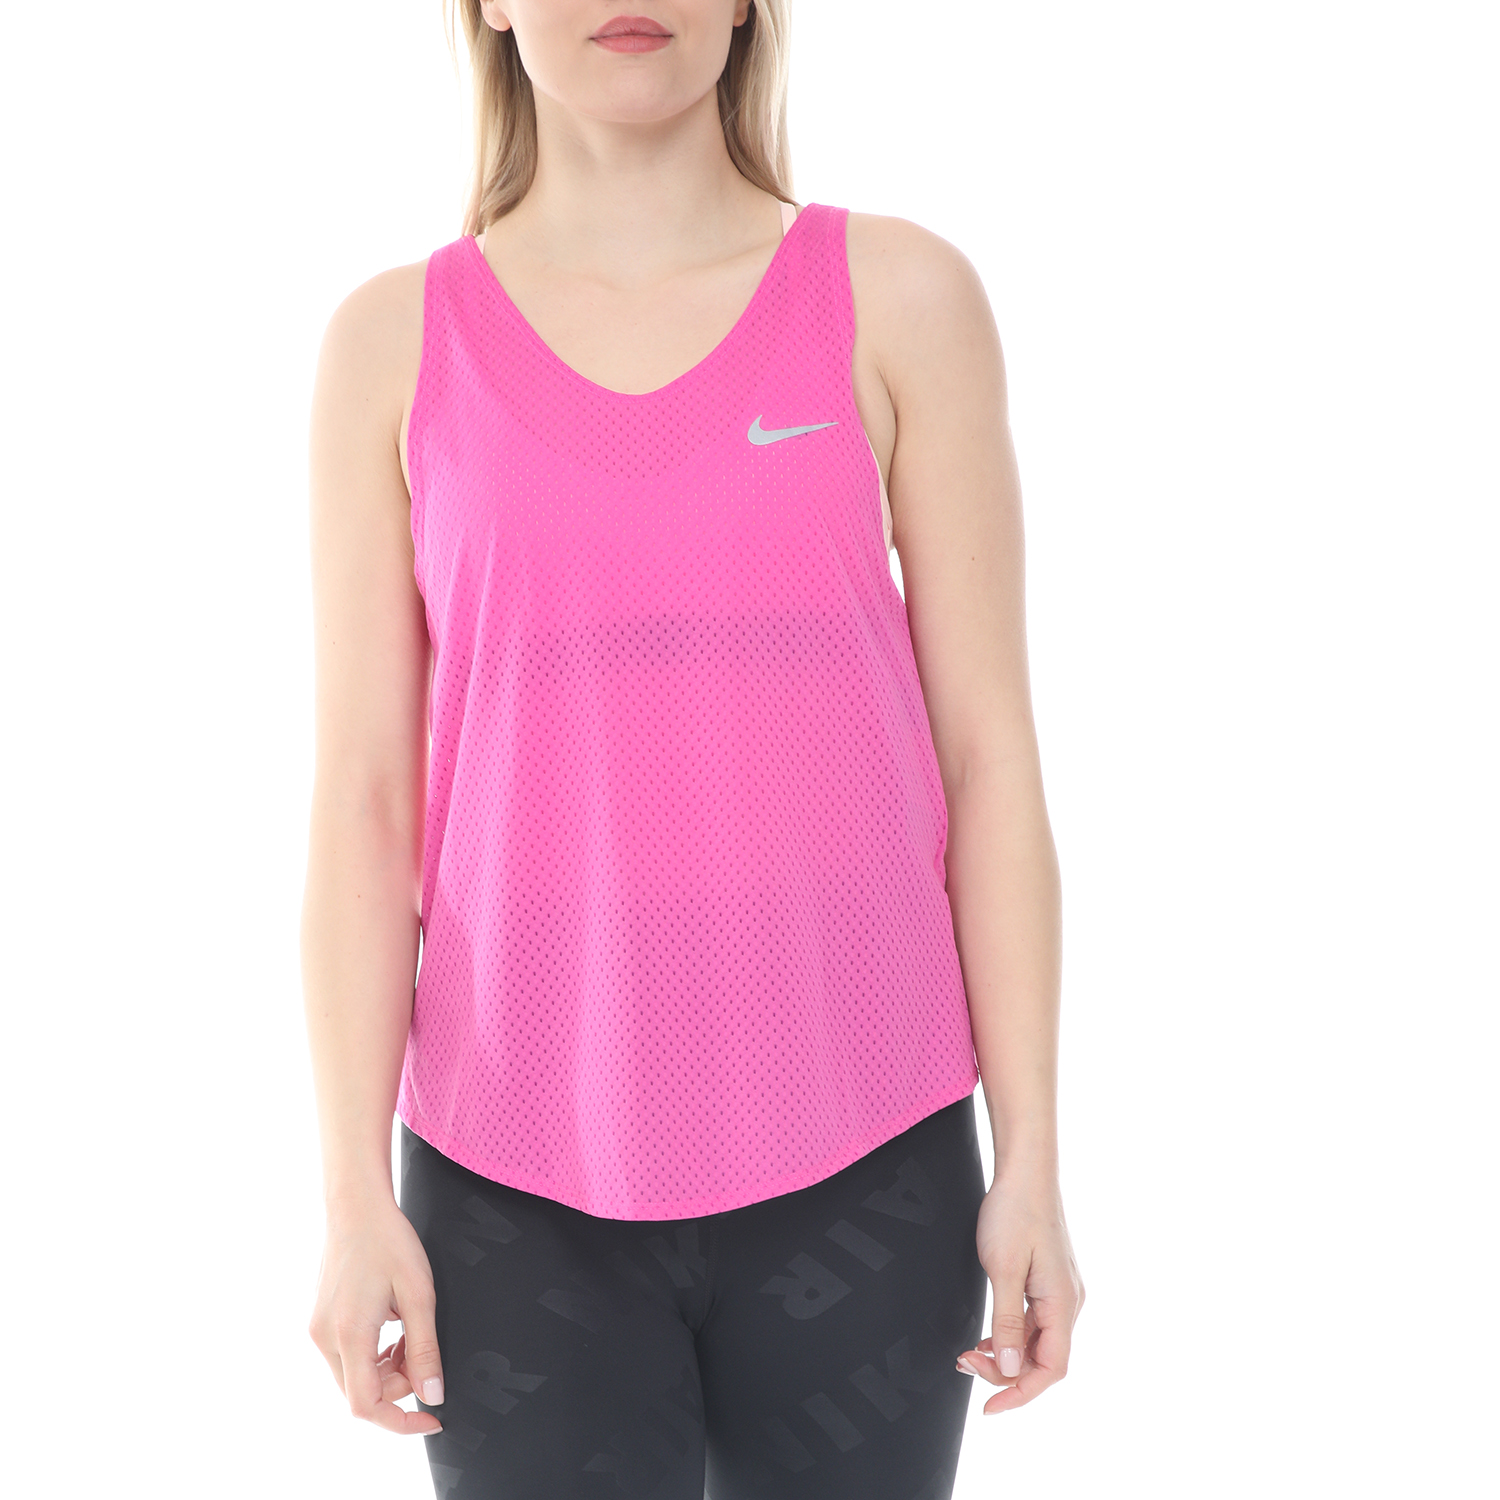 Γυναικεία/Ρούχα/Αθλητικά/T-shirt-Τοπ NIKE - Γυναικείο top NIKE TANK BREATHE ροζ